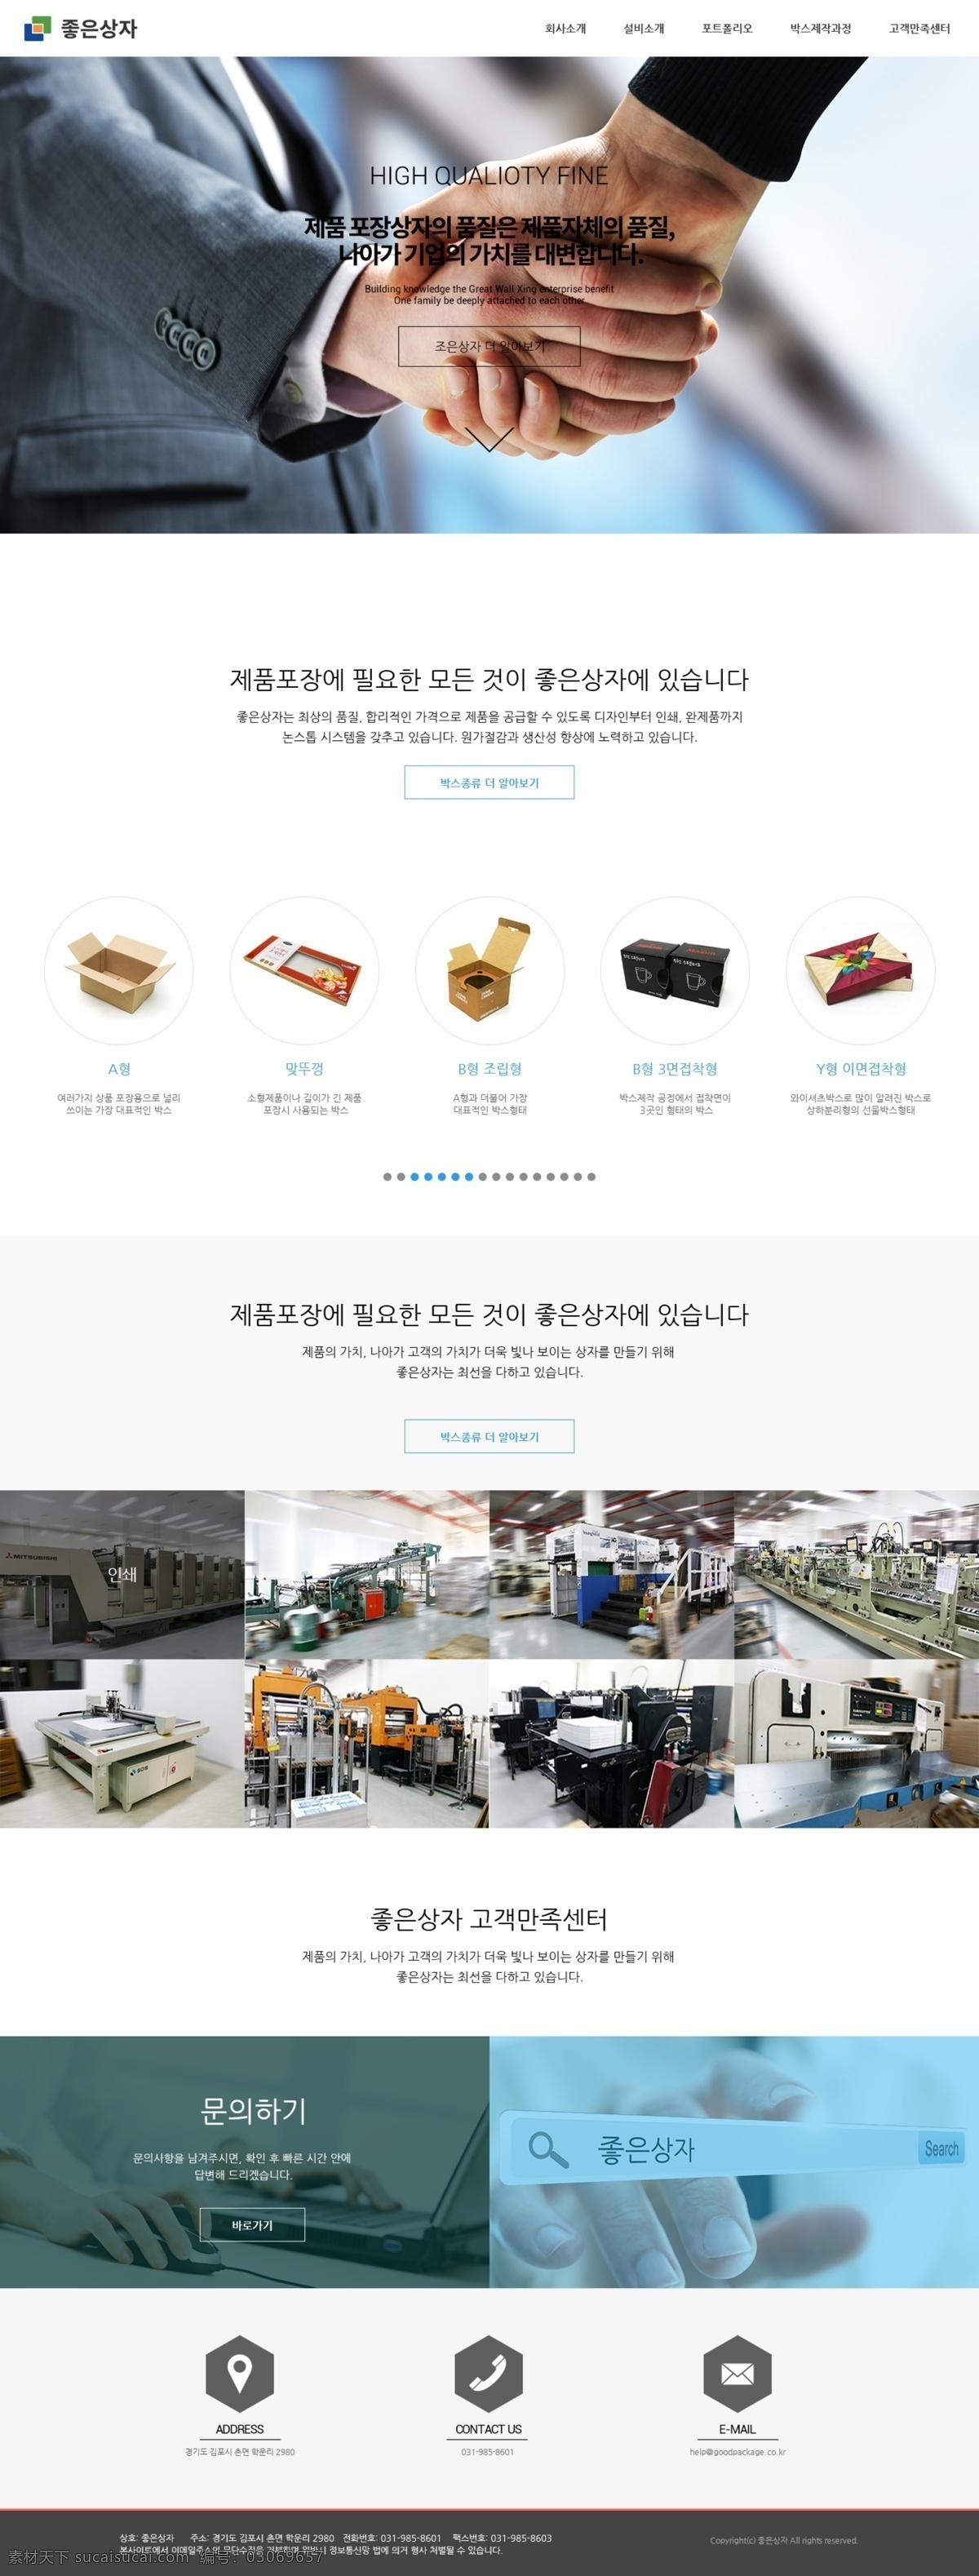 韩国 印刷包装 公司 网站 印刷 包装 印刷设备 包装设计 白色